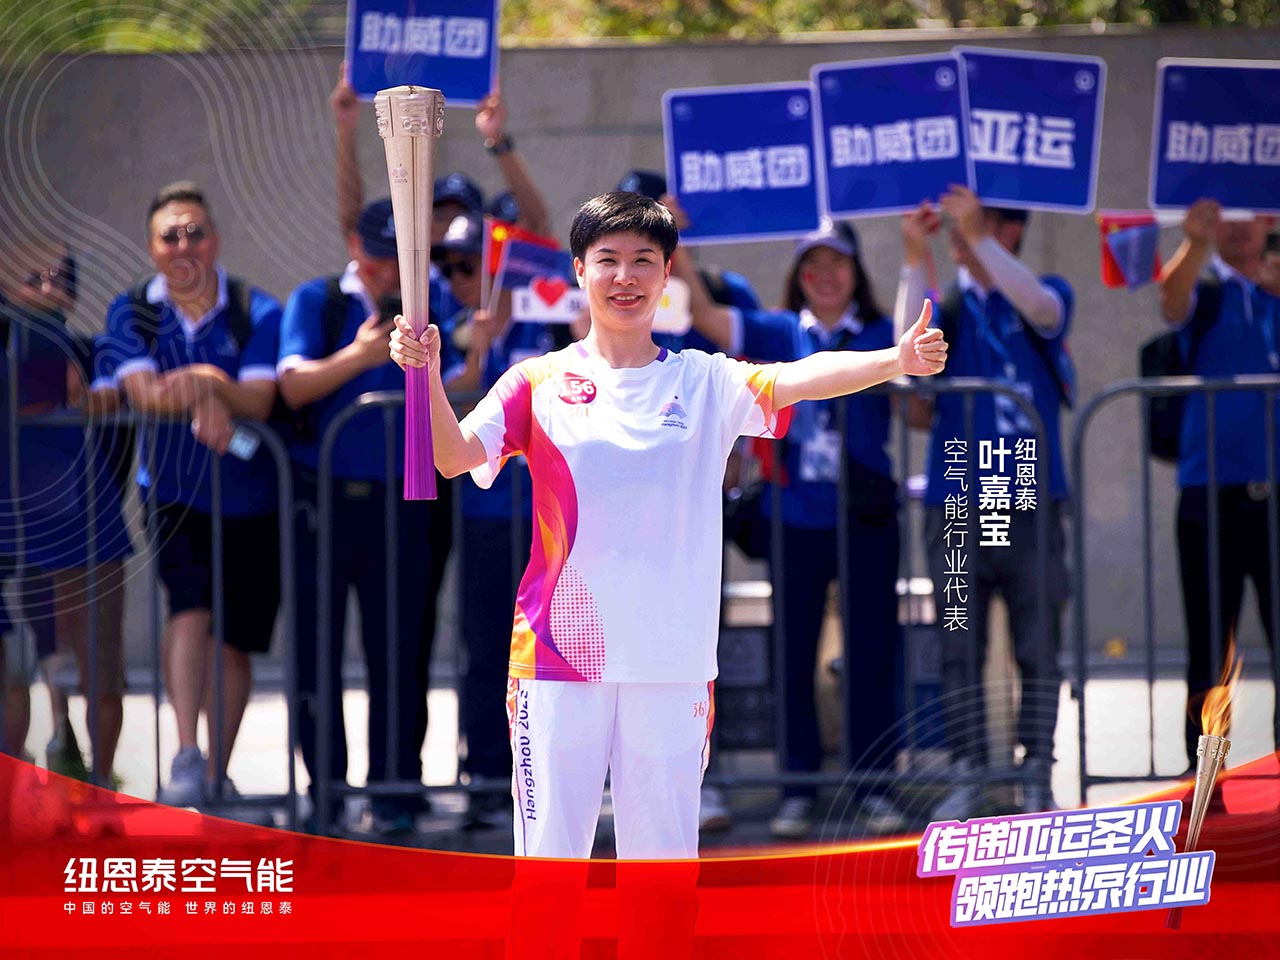 杭州亚运会官方供应商欧亚国际app叶嘉宝空气能行业代表领跑第156棒 助力亚运 节能高效